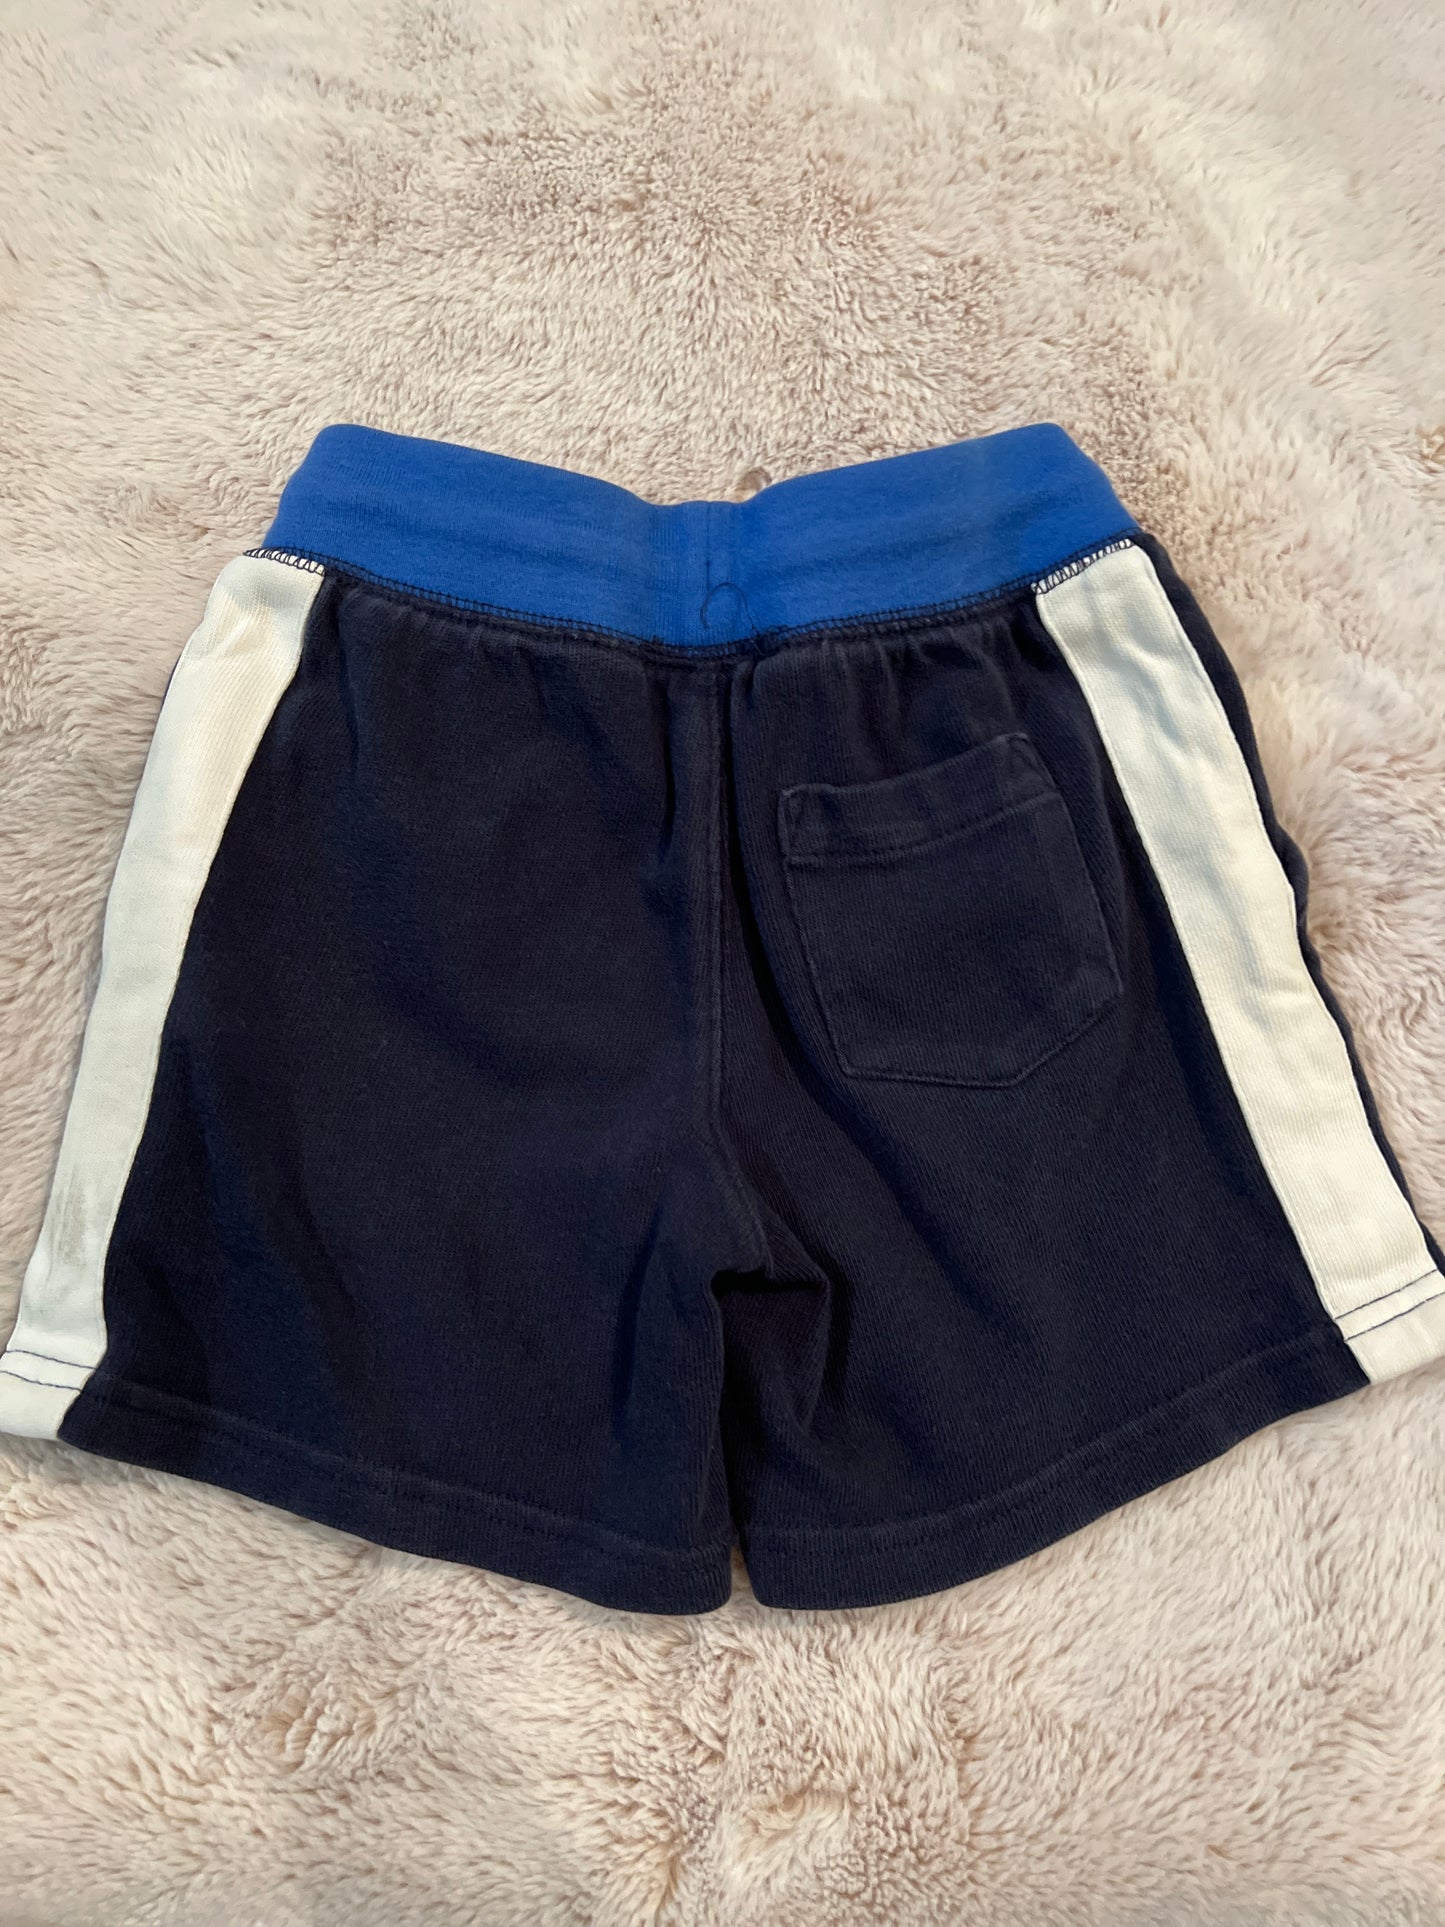 Boys navy Polo shorts 2/2T